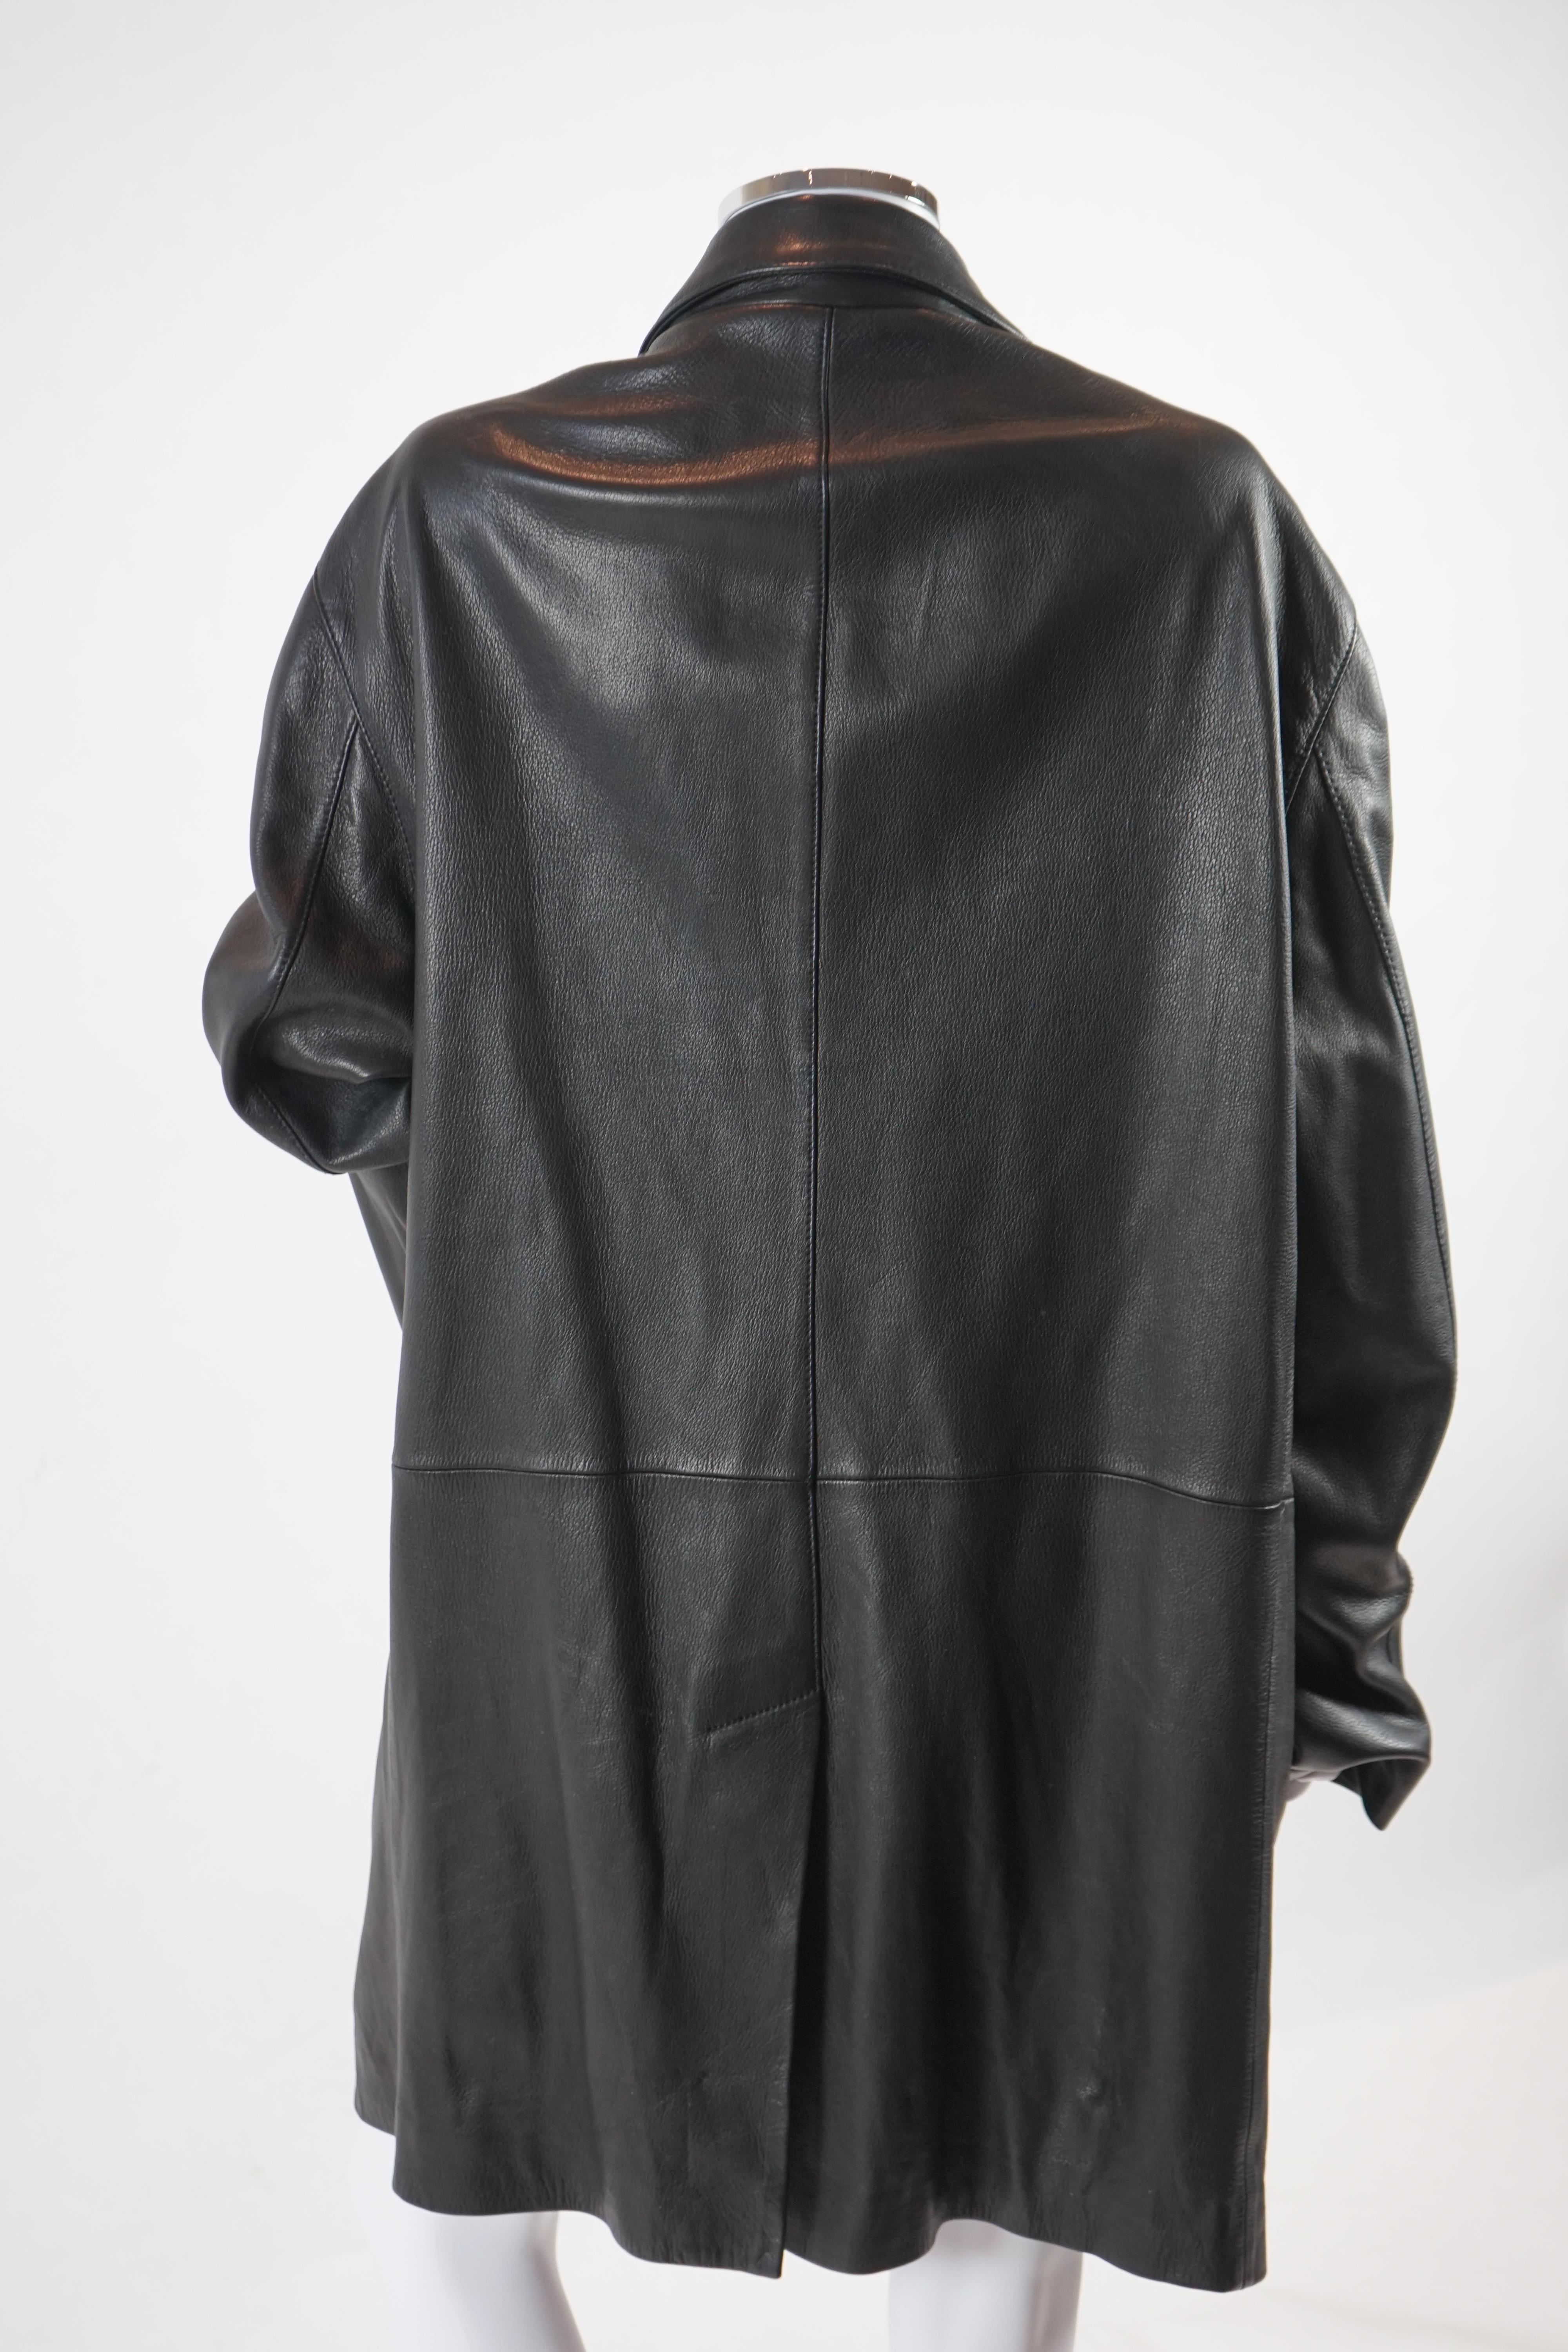 A Versace Jeans Couture men's black leather jacket and a Donna Karan men's black leather jacket, Size L